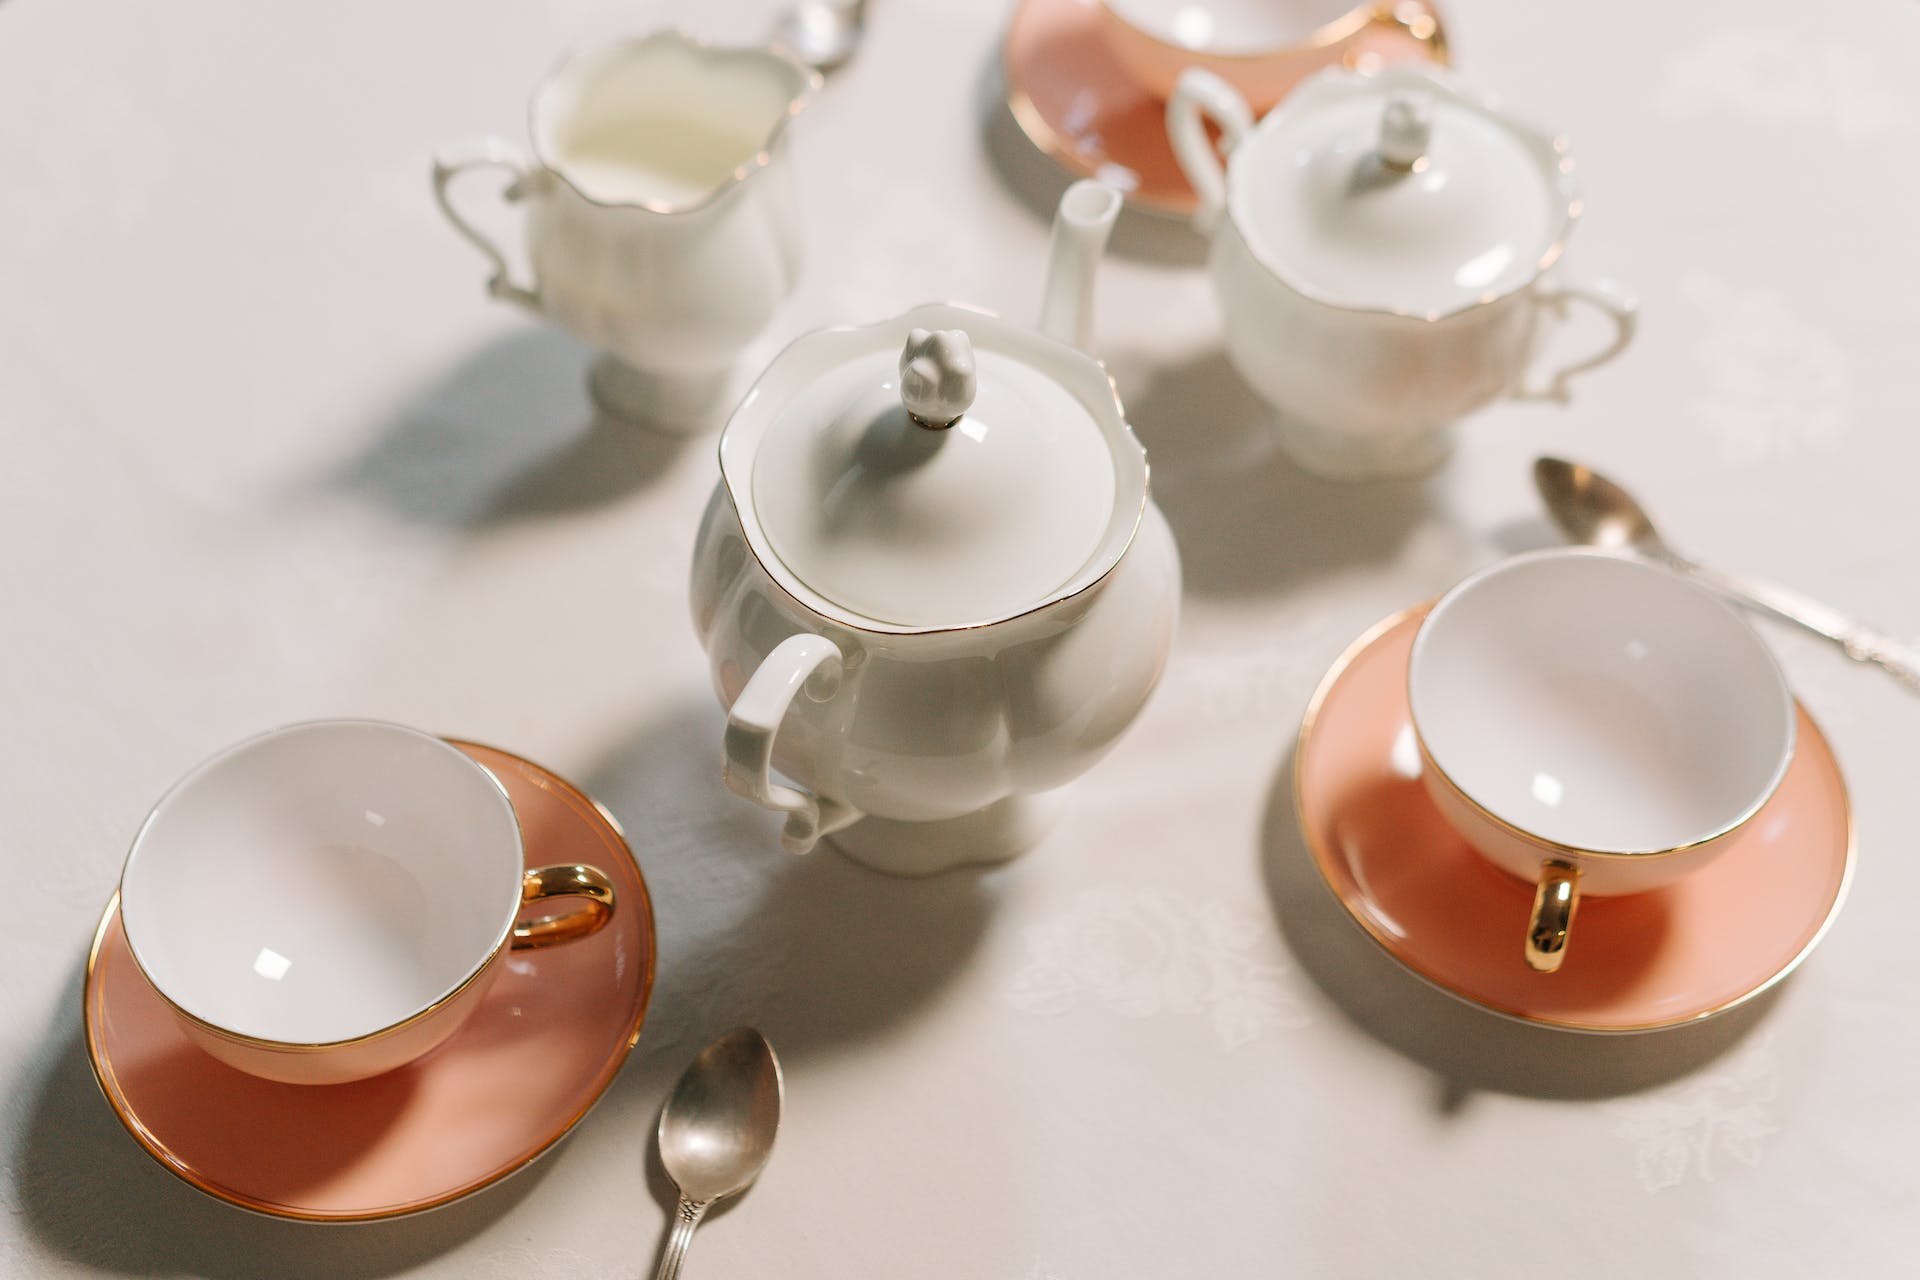 Rosa und weißes Teeservice. | Quelle: Pexels